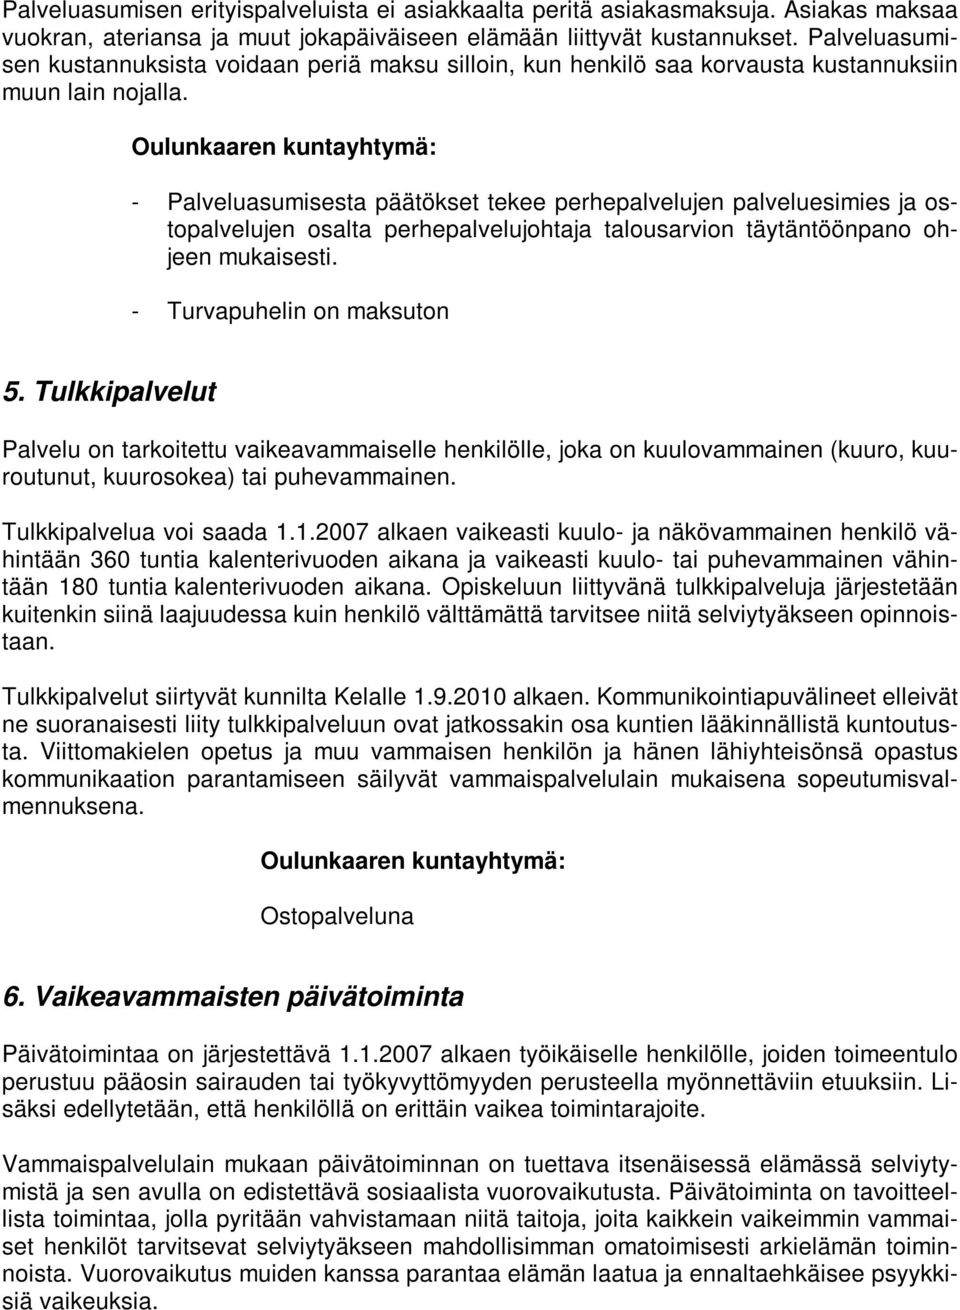 Oulunkaaren kuntayhtymä: - Palveluasumisesta päätökset tekee perhepalvelujen palveluesimies ja ostopalvelujen osalta perhepalvelujohtaja talousarvion täytäntöönpano ohjeen mukaisesti.